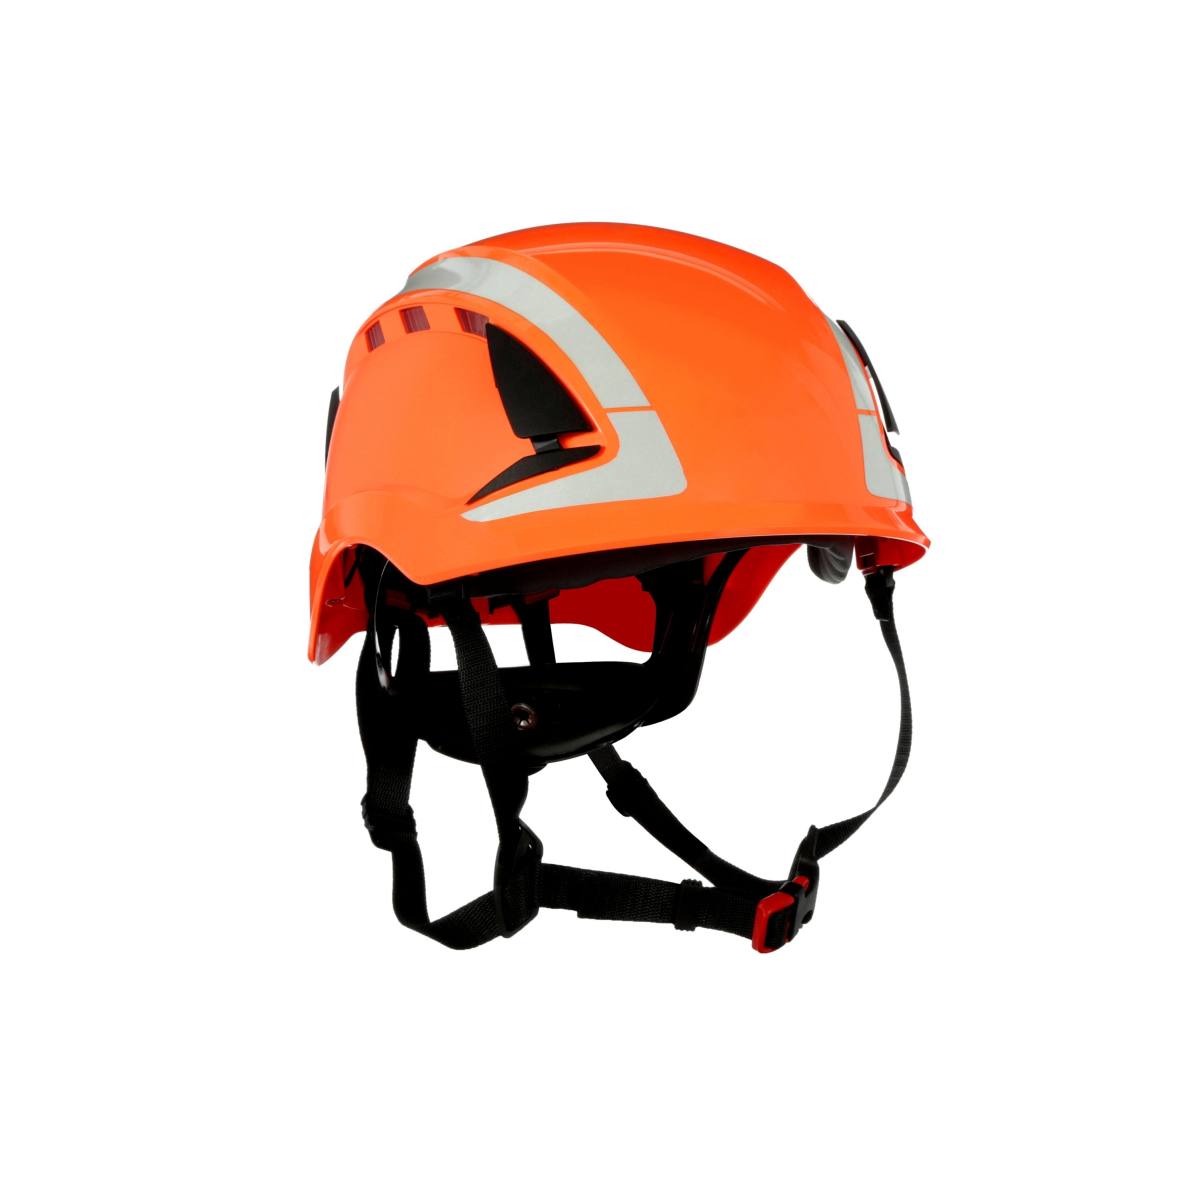 3M SecureFit safety helmet, X5007V-CE, orange, ventilated, reflective, CE